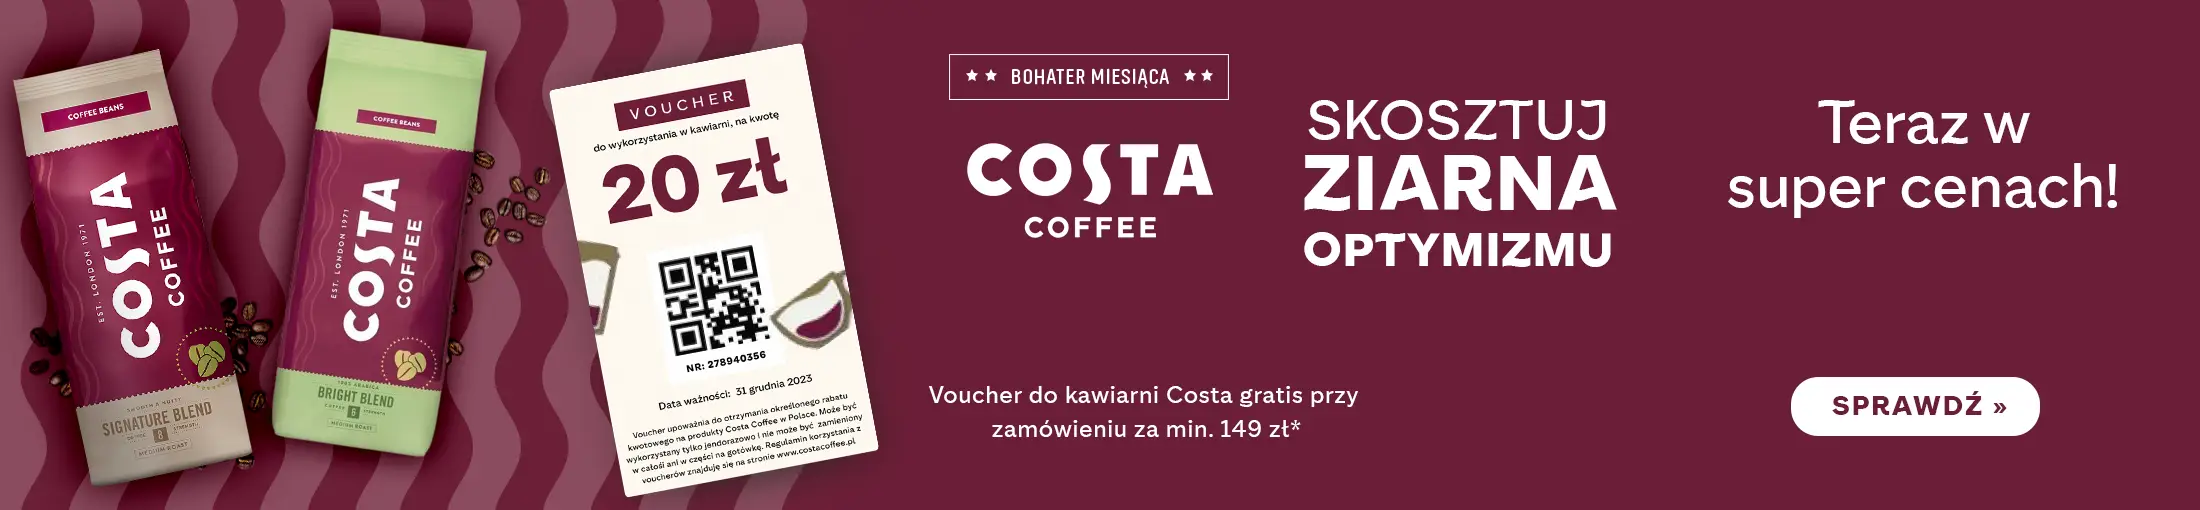 Kawy Costa Coffee teraz w super cenach